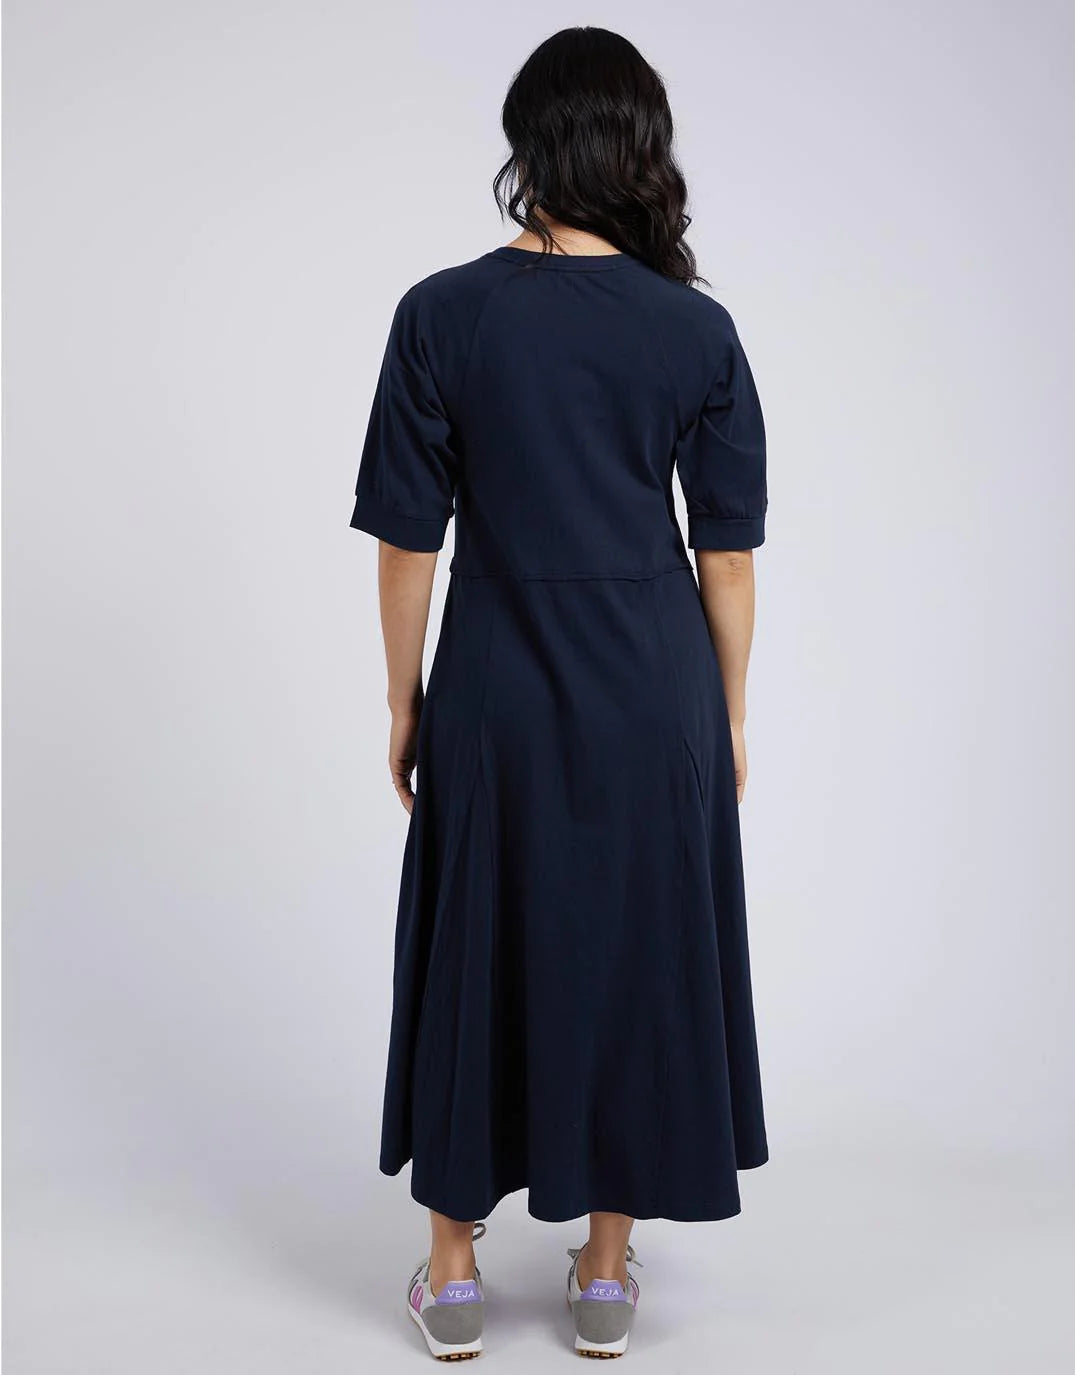 Elm Knitwear | York Midi Dress - Navy | Shut the Front Door